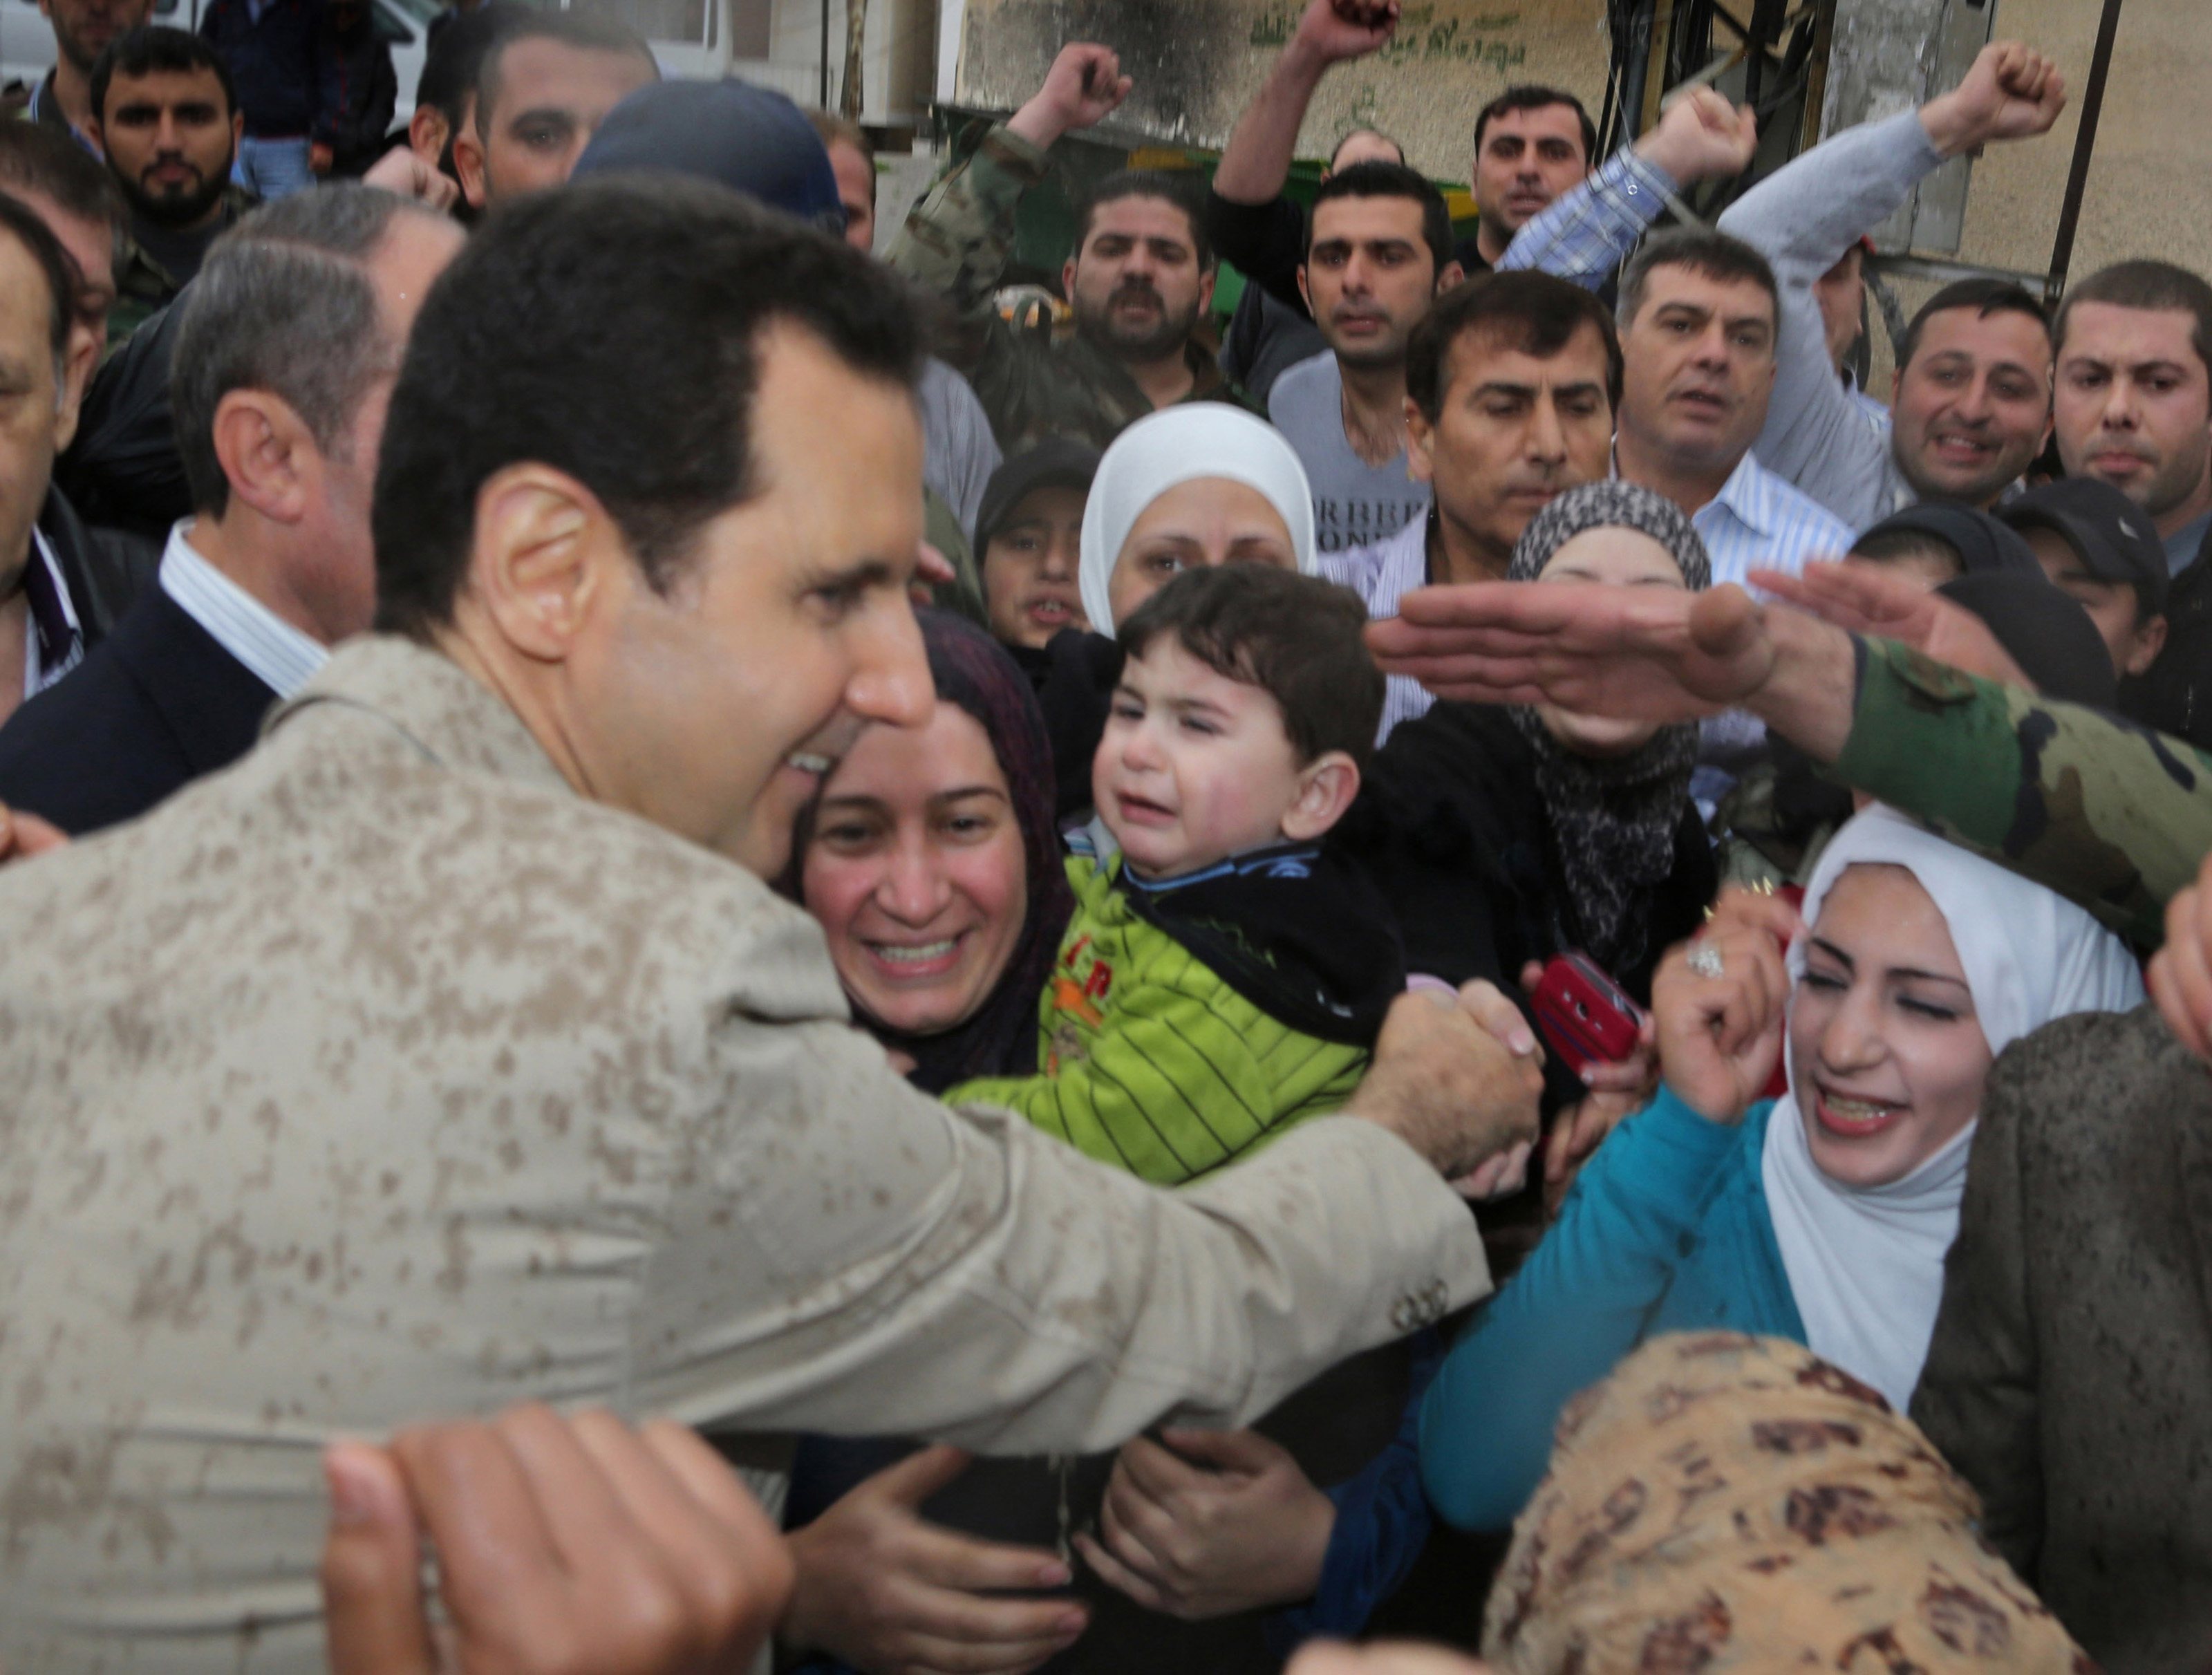 Η πρώτη δημόσια εμφάνιση Άσαντ μετά από καιρό (ΦΩΤΟ)